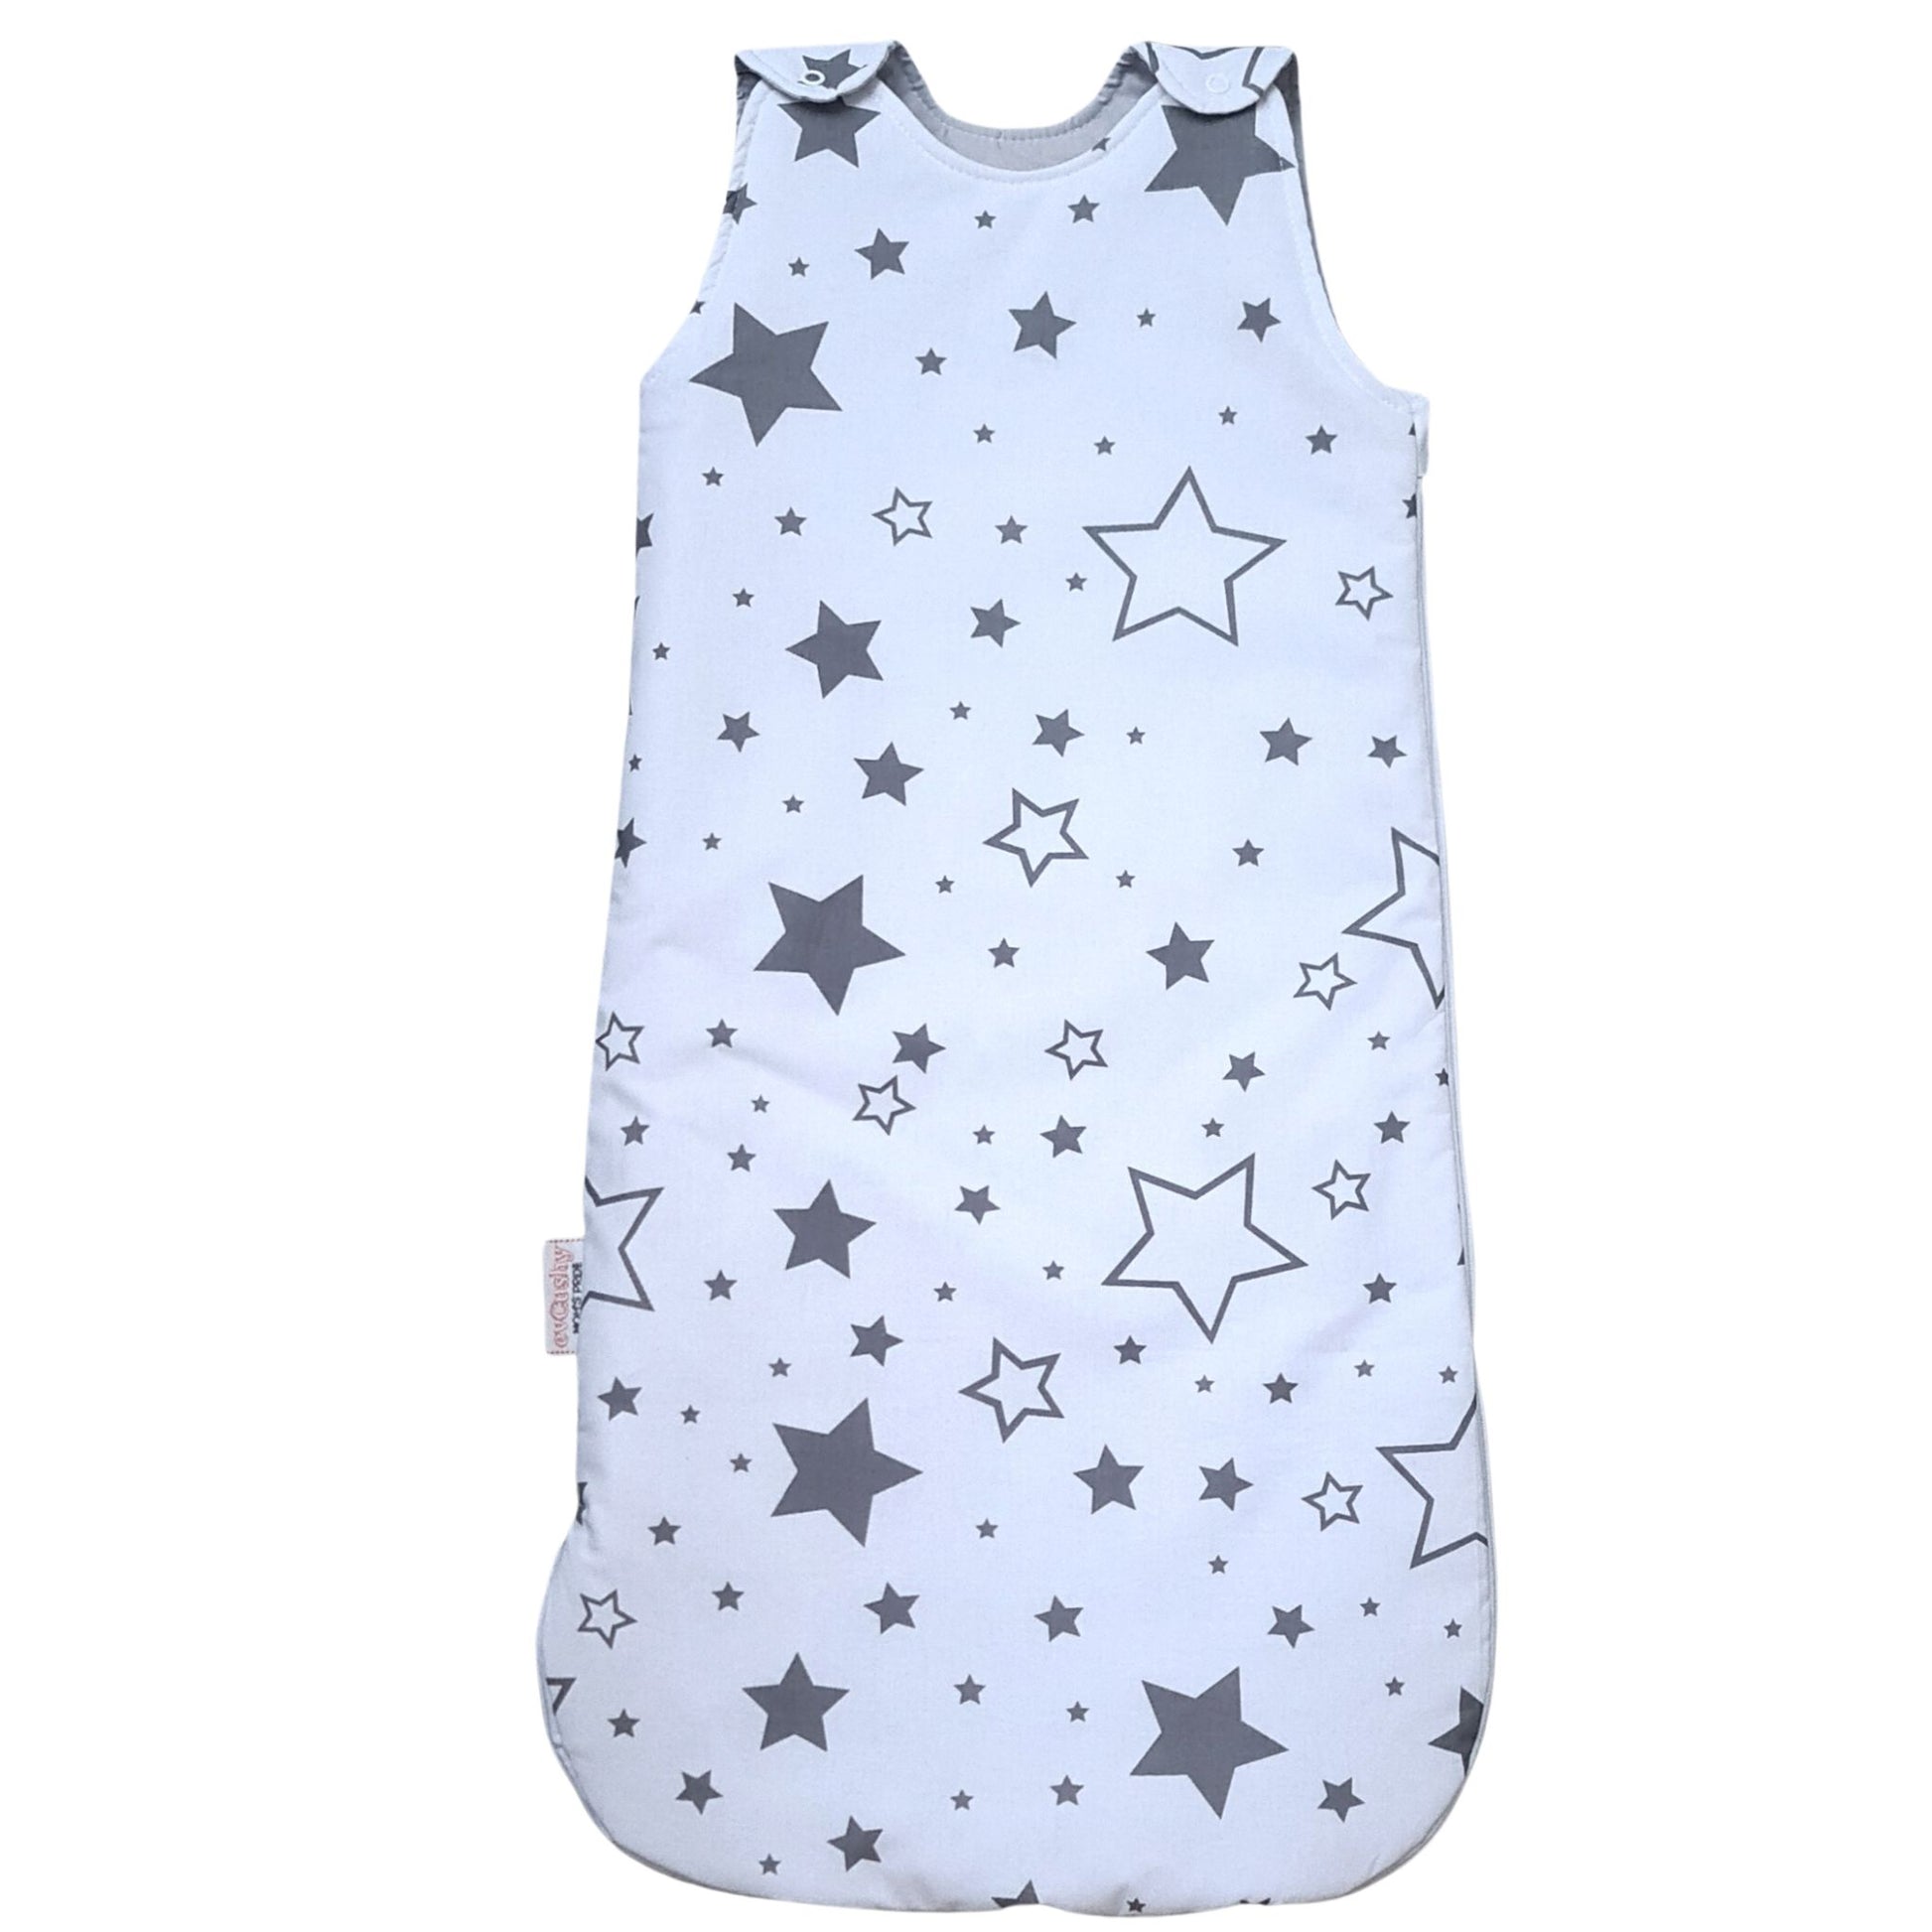 baby sleeping bag 2 tog 100% cotton stars pattern